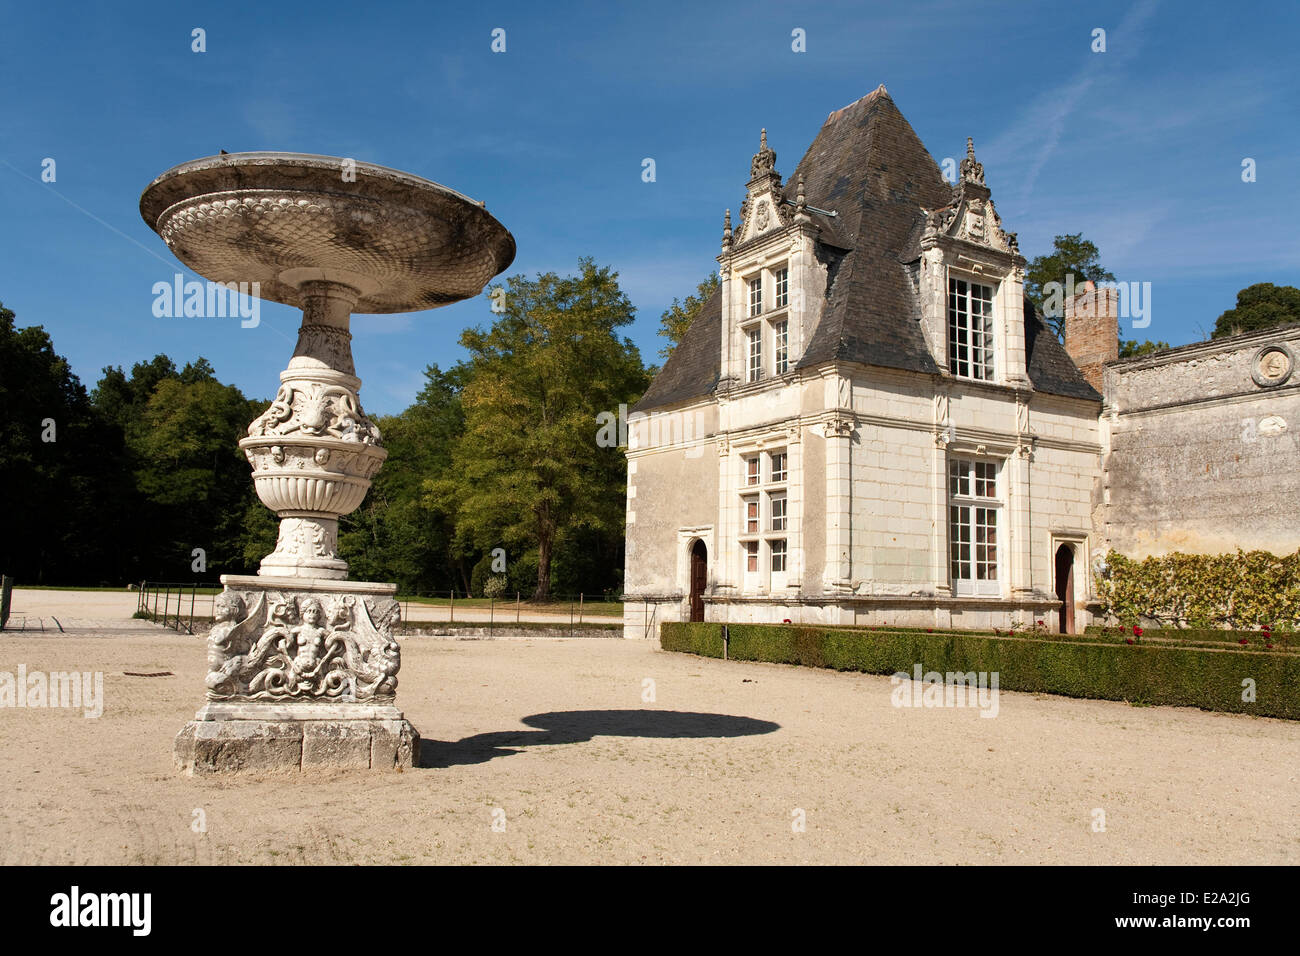 France, Loir et Cher, Tour en Sologne, le château de Villesavin, bassin Florentine en marbre de Carrare Banque D'Images